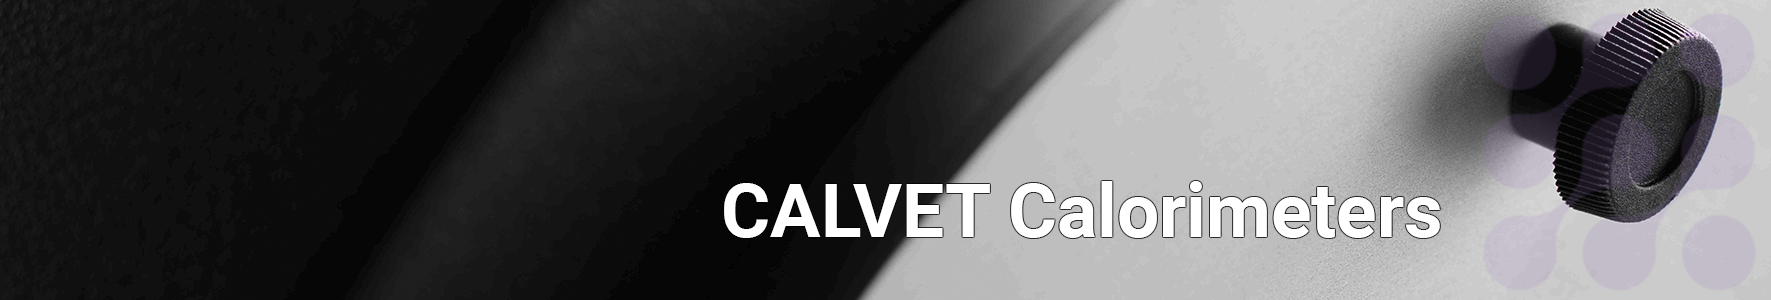 CALVET Calorimeters